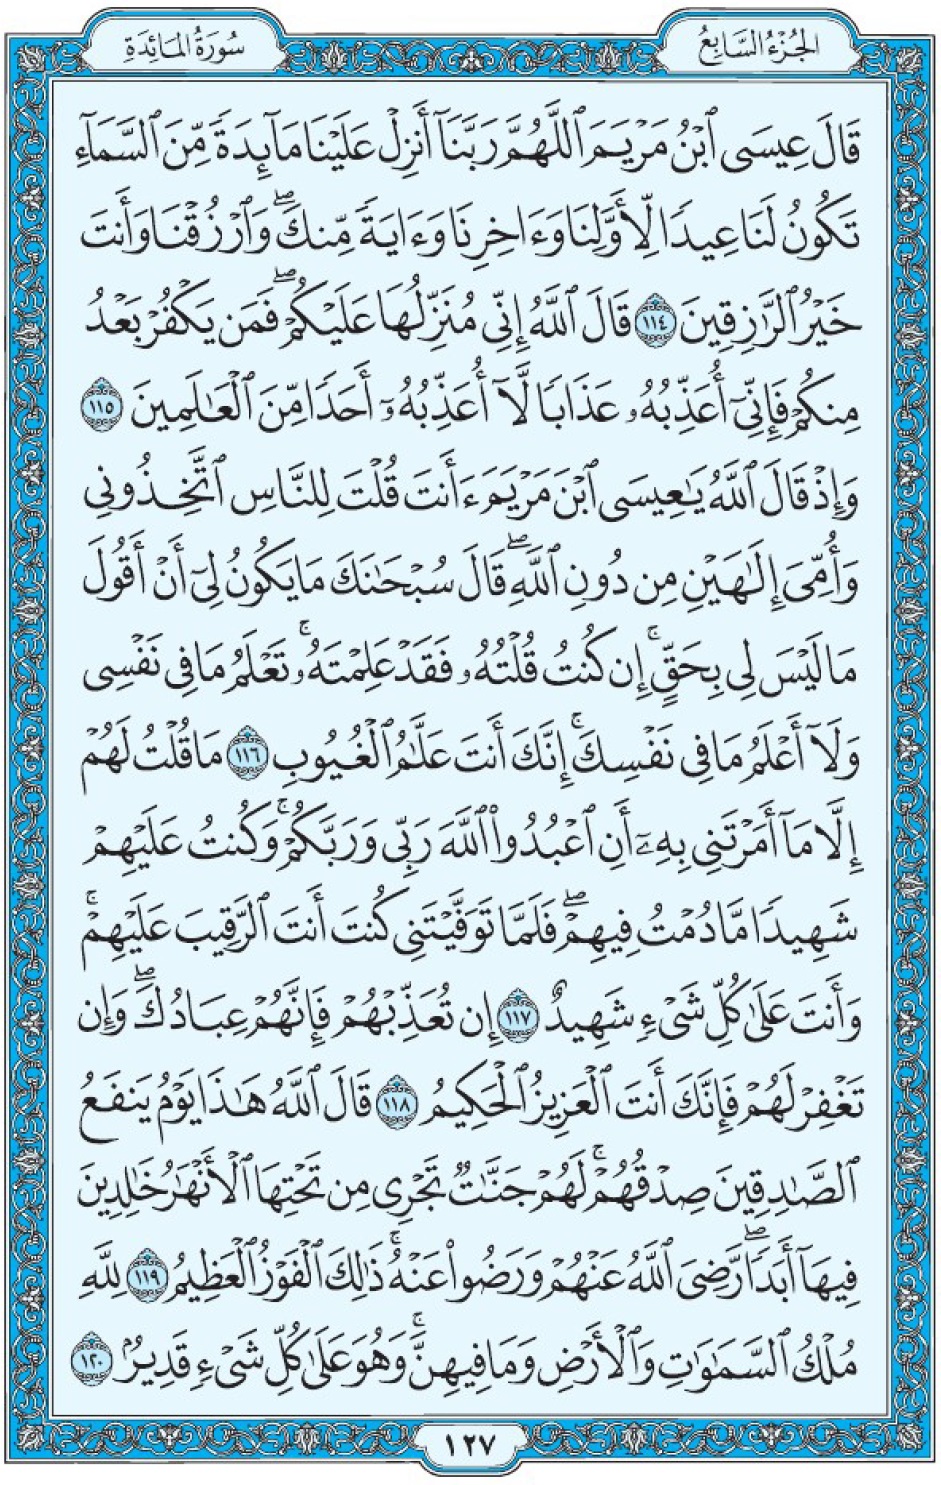 Коран Мединский мусхаф страница 127, Аль-Маида, аят 114-120